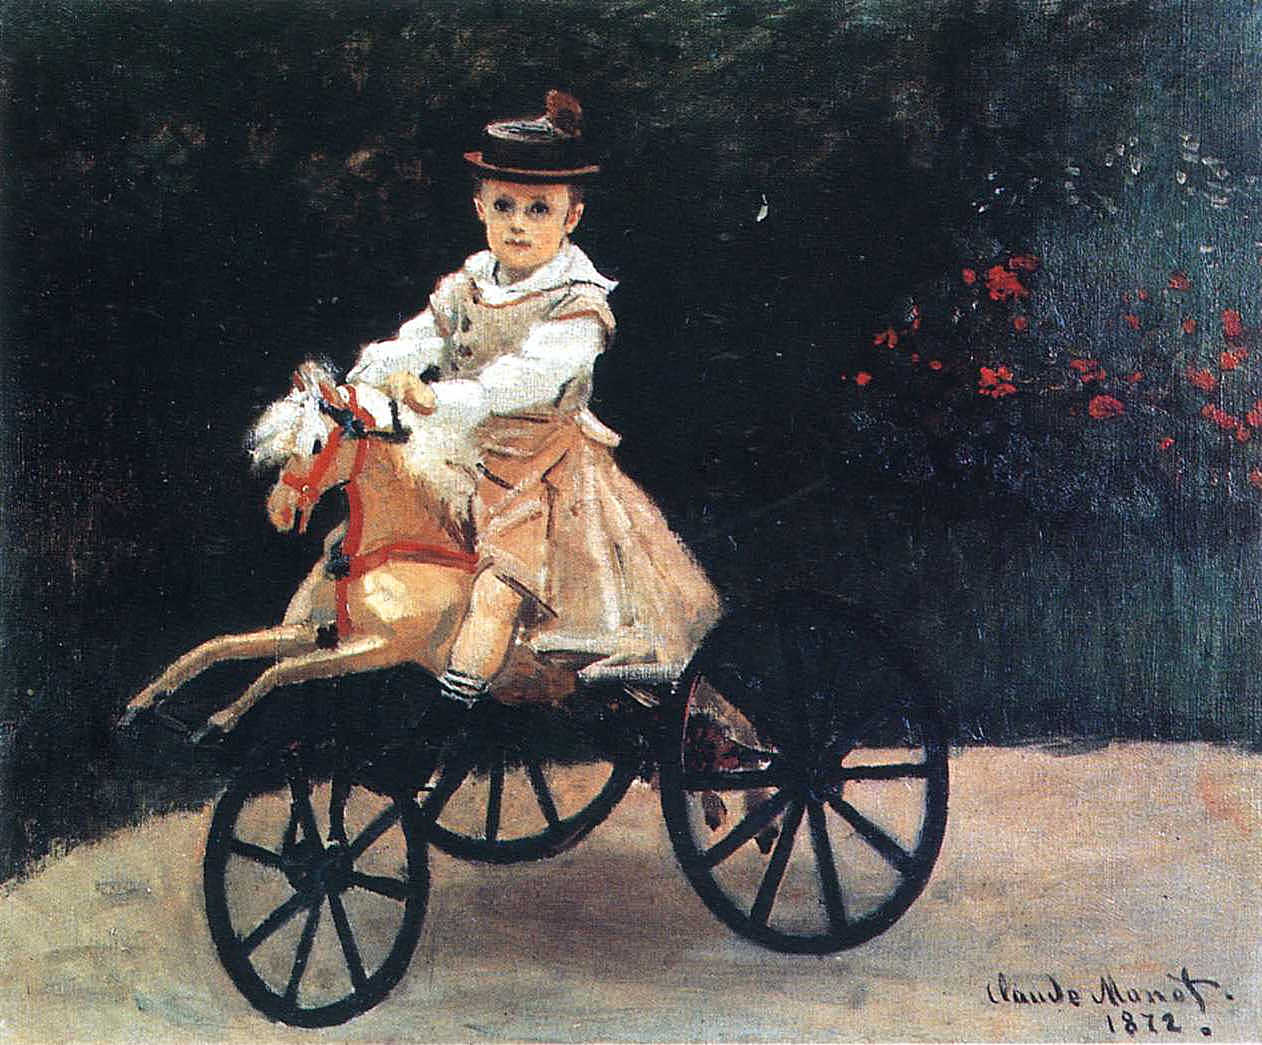 Клод Моне. "Жан Моне на механической лошадке". 1872. Музей Метрополитен, Нью-Йорк.